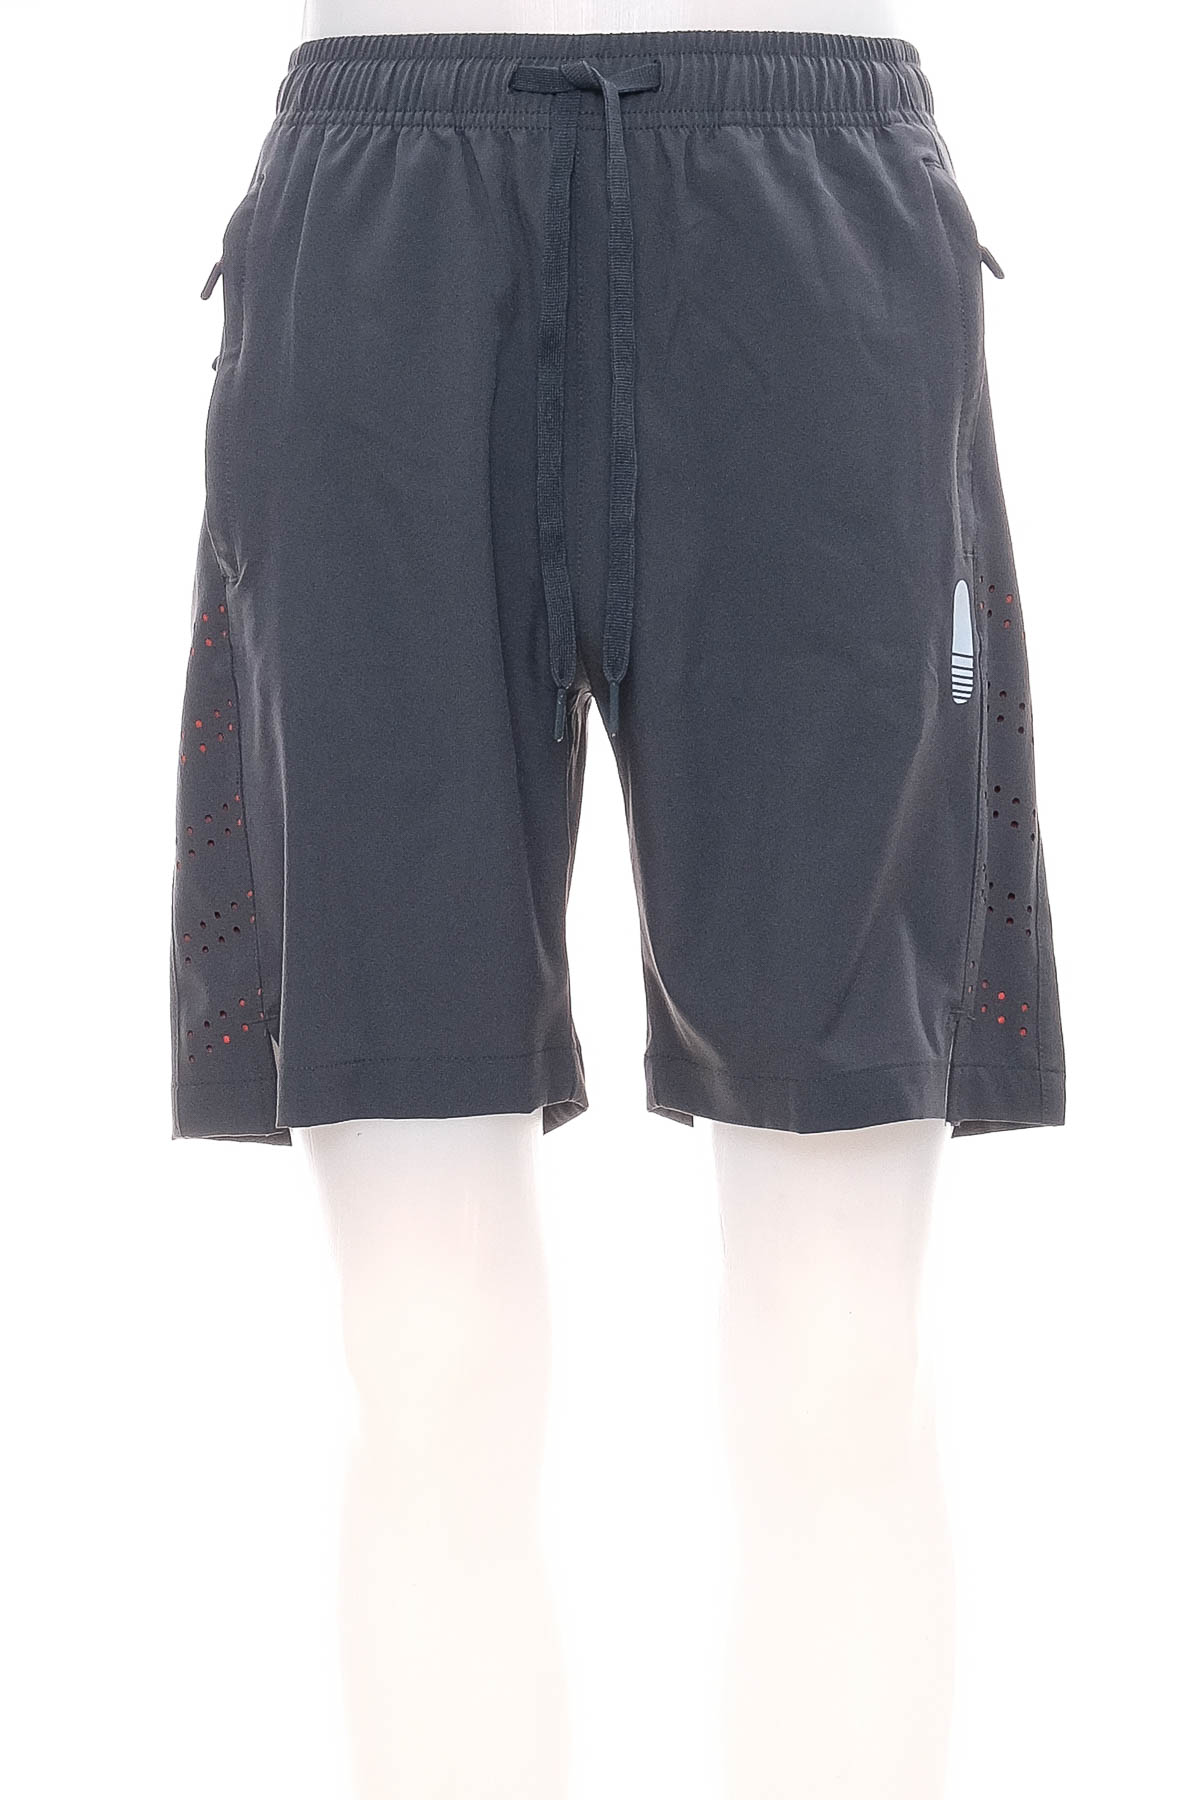 Men's shorts - BAYGE - 0